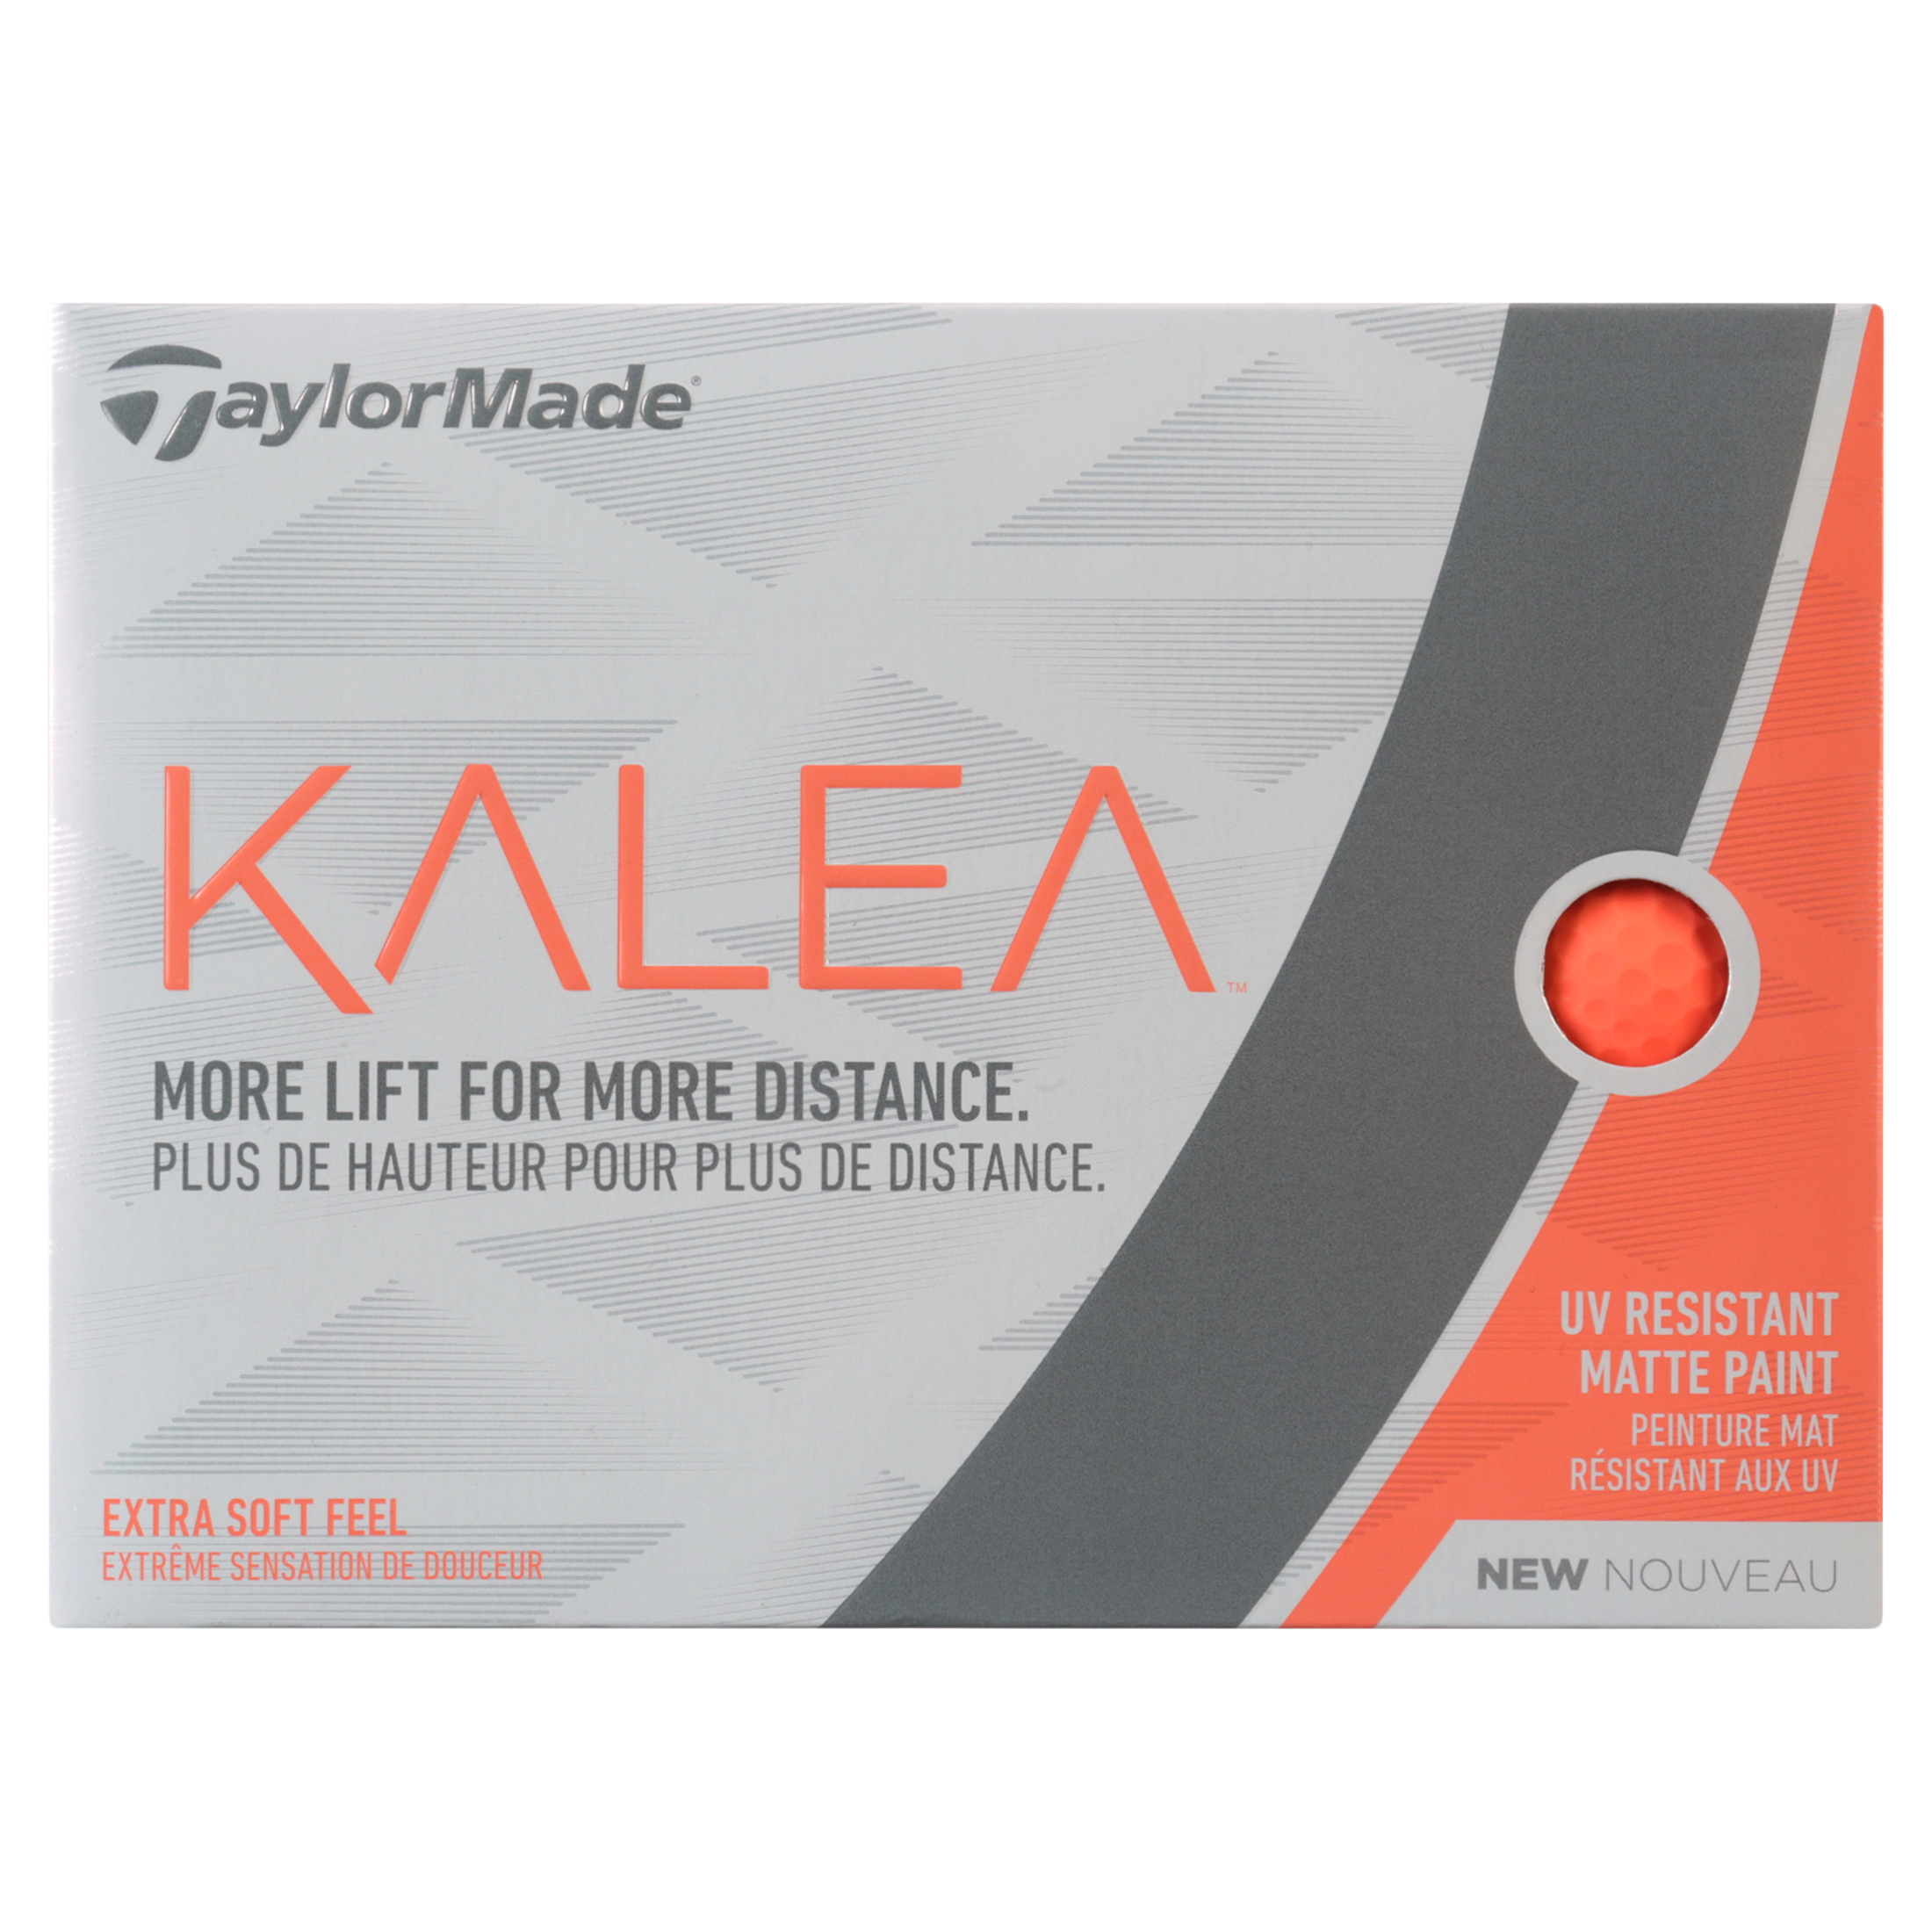 TaylorMade Women's 2019 Kalea Matte Peach Golf Balls, 12 Pack - image 5 of 9